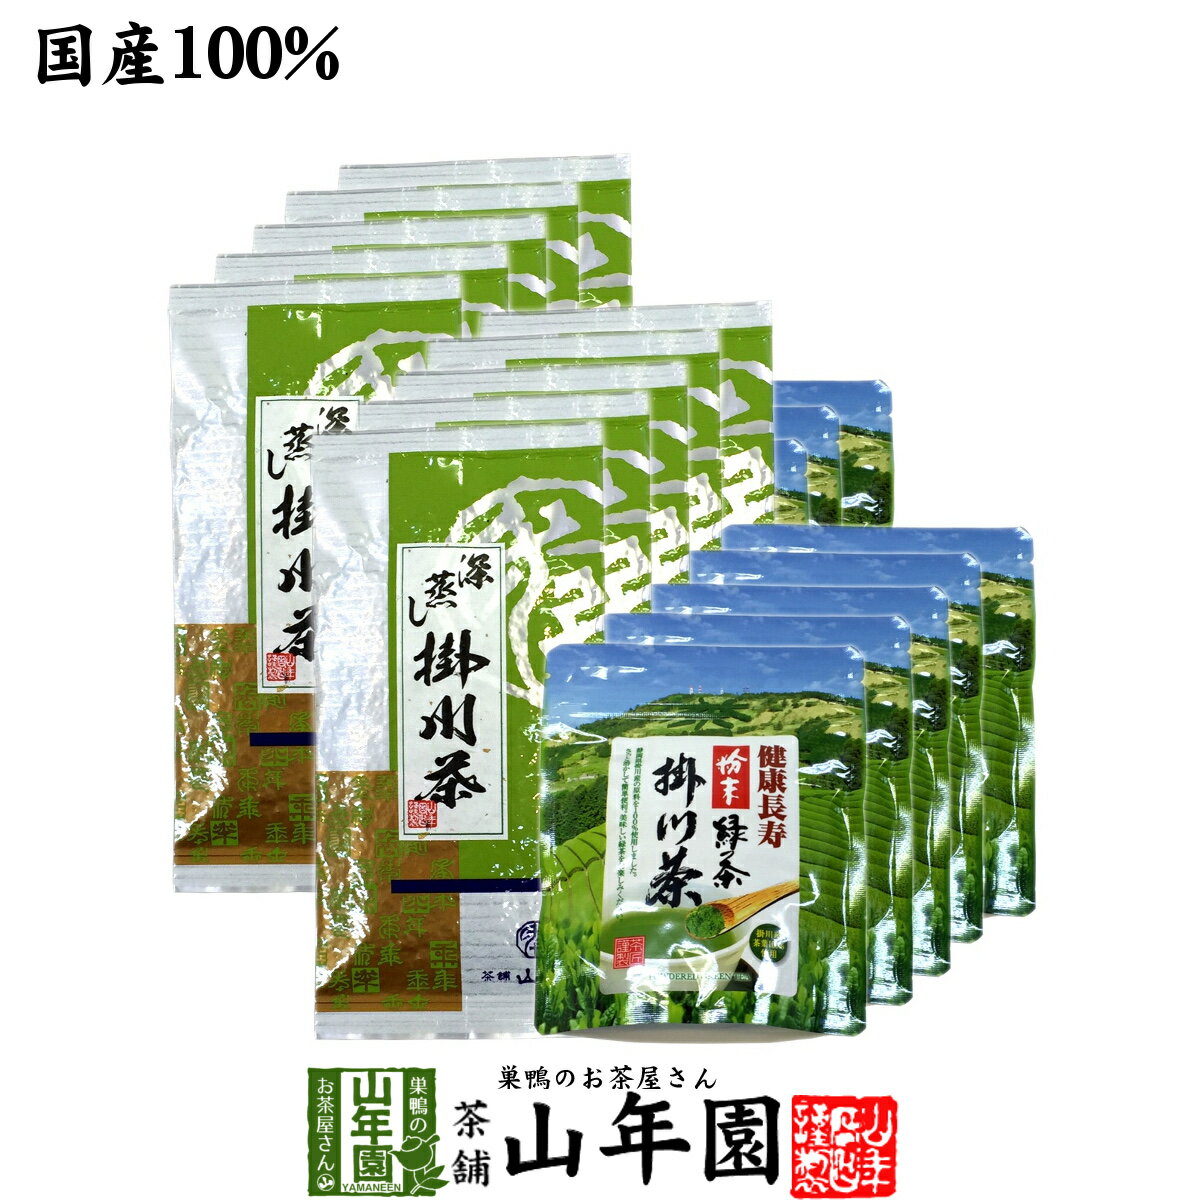 【掛川茶】掛川深蒸し茶+掛川粉末茶セット 20袋セット(10